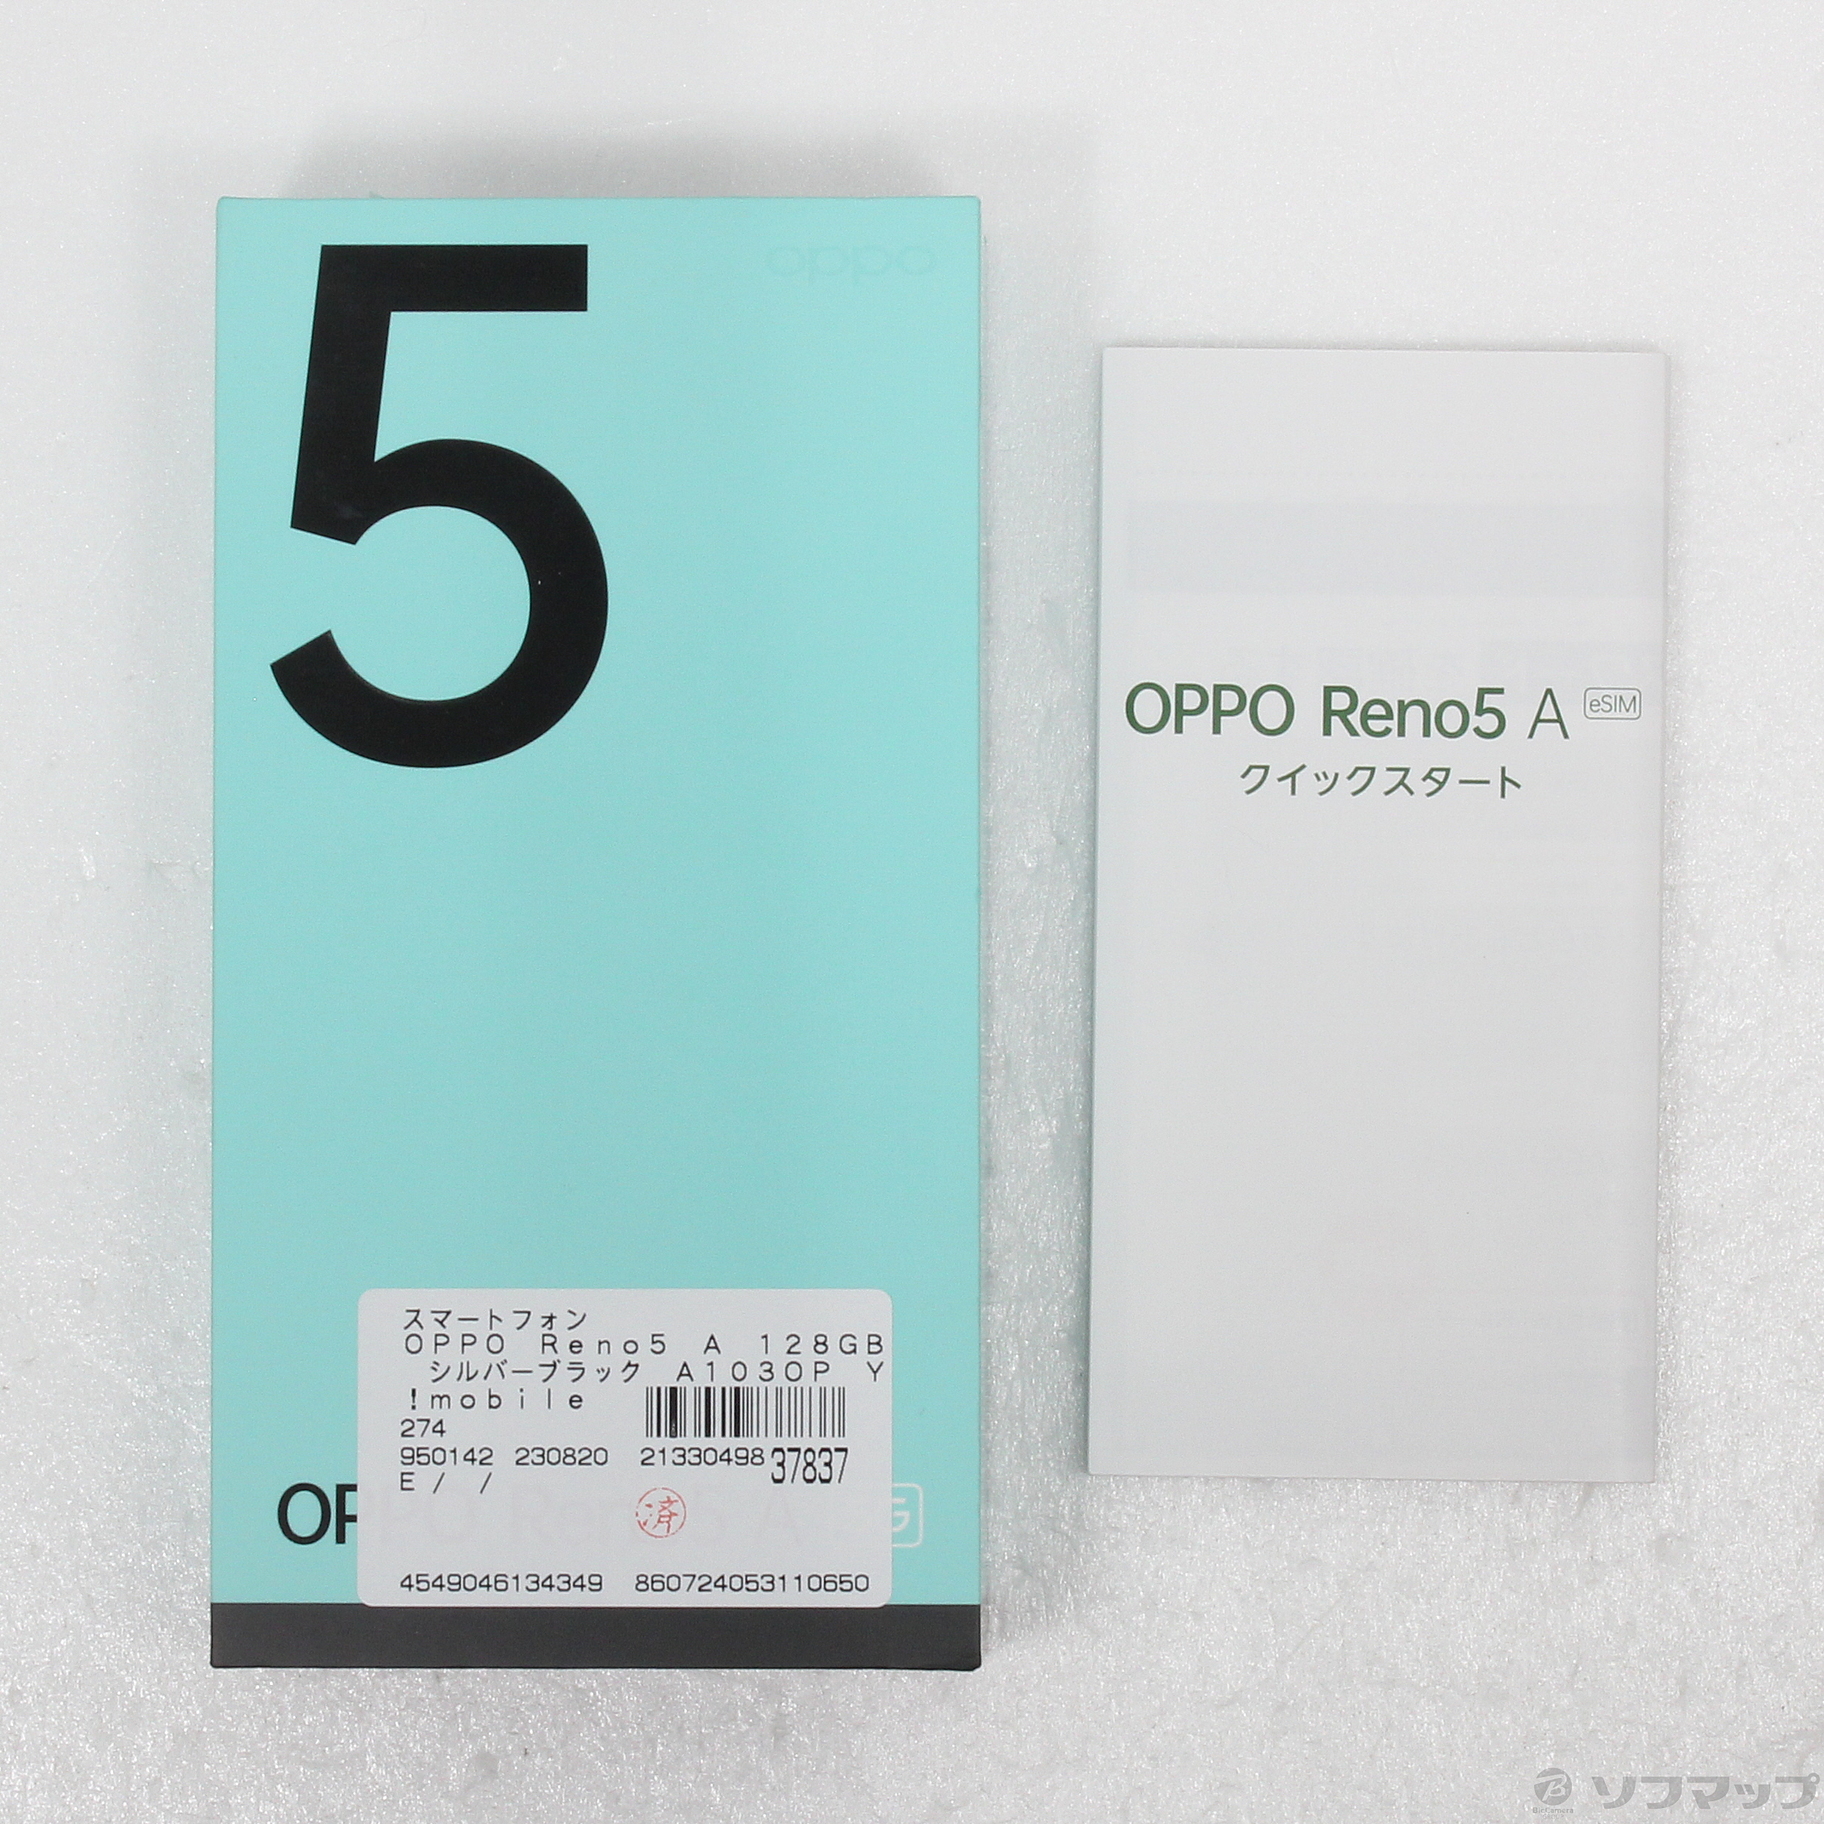 OPPO Reno5 A (eSIM) A103OP シルバーブラック